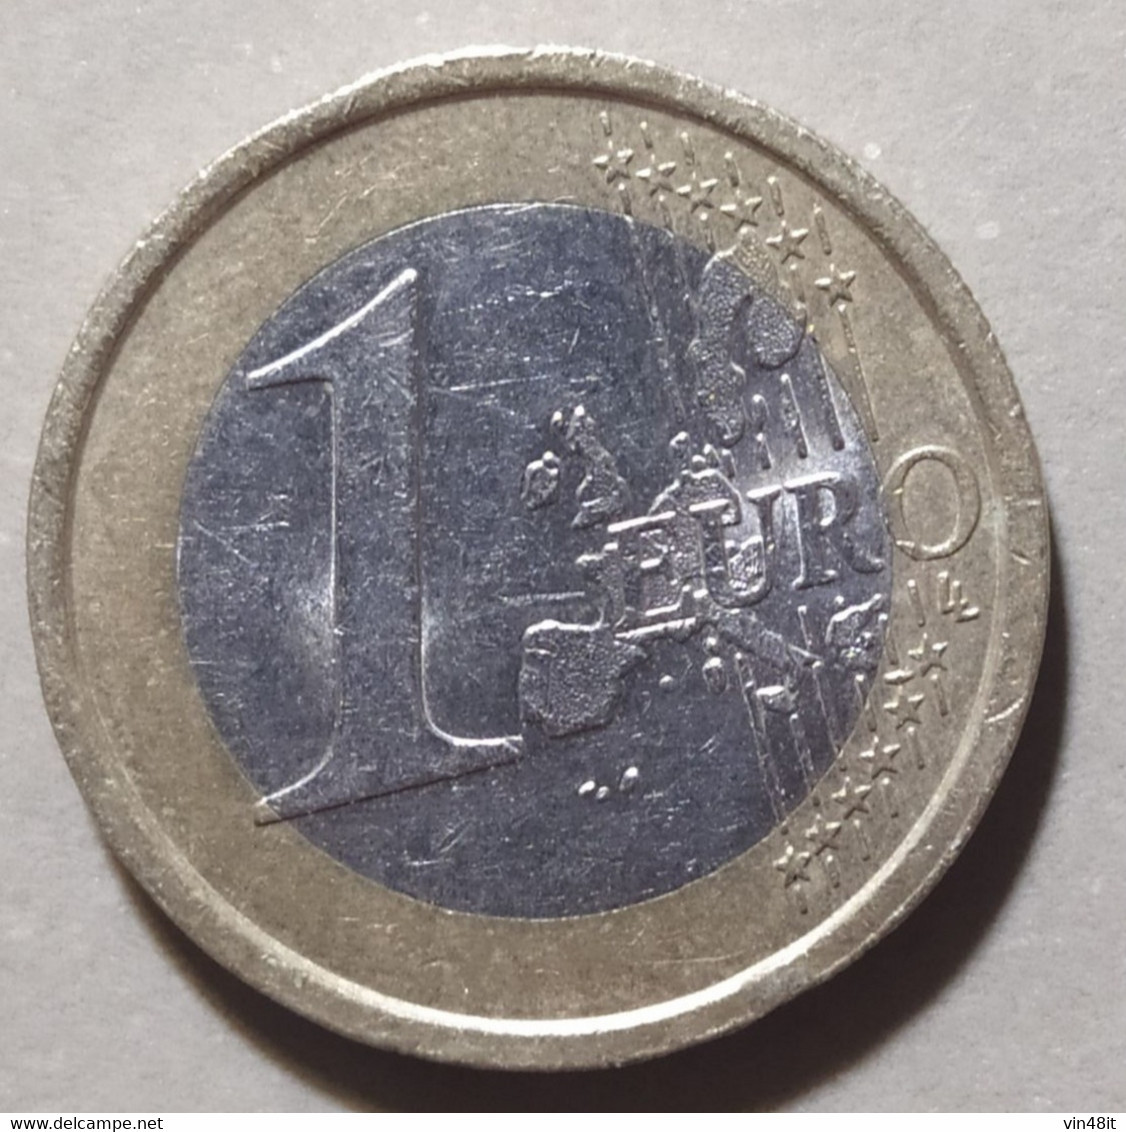 2003 - ITALIA  REPUBBLICA  - MONETA IN EURO  -  DEL VALORE DI 1  EURO - USATA - - Italia